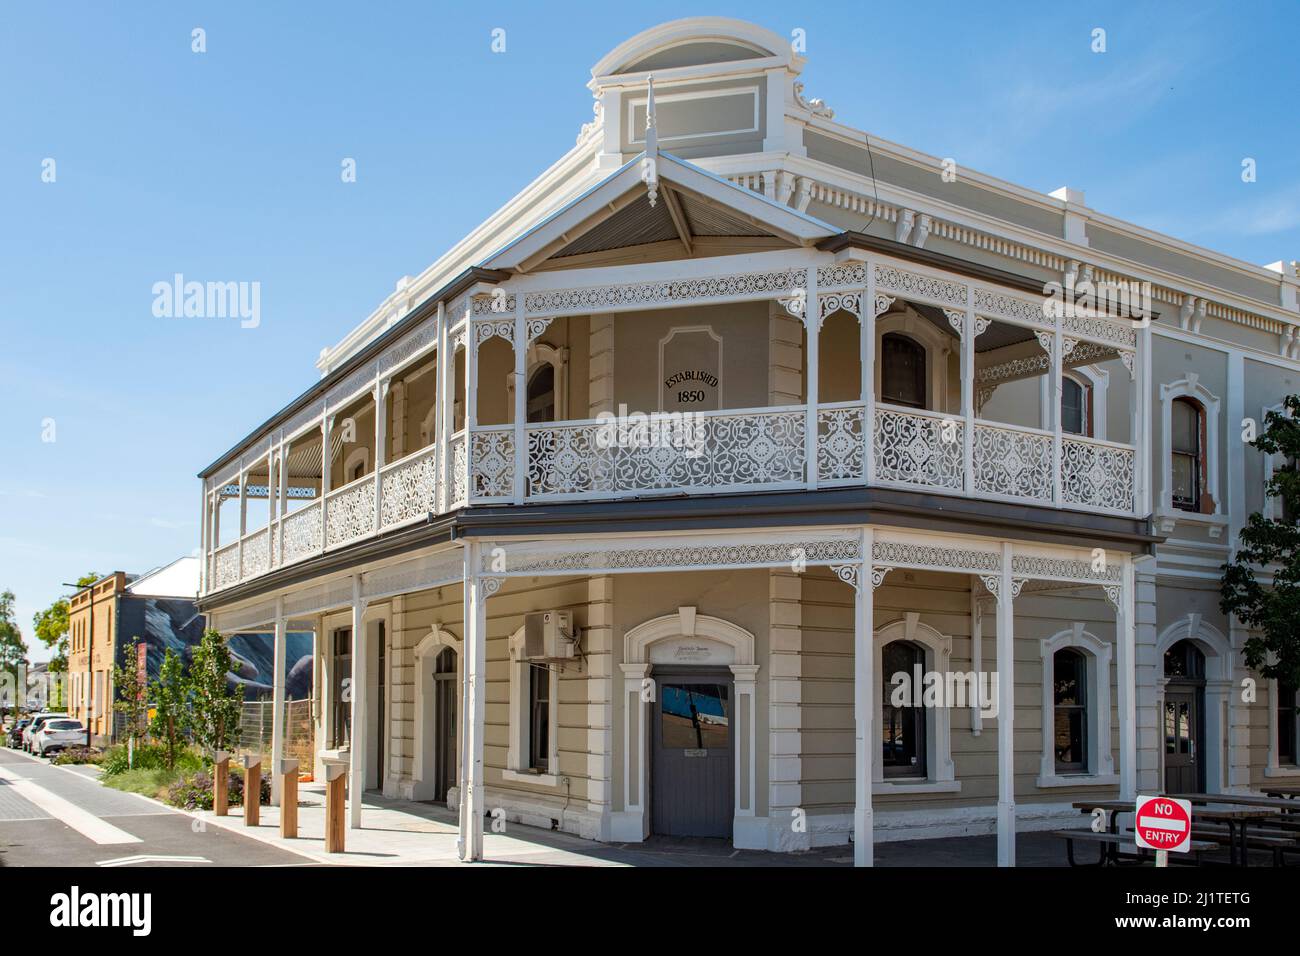 Historic Hotel, Port Adelaide, South Australia, Australia Stock Photo